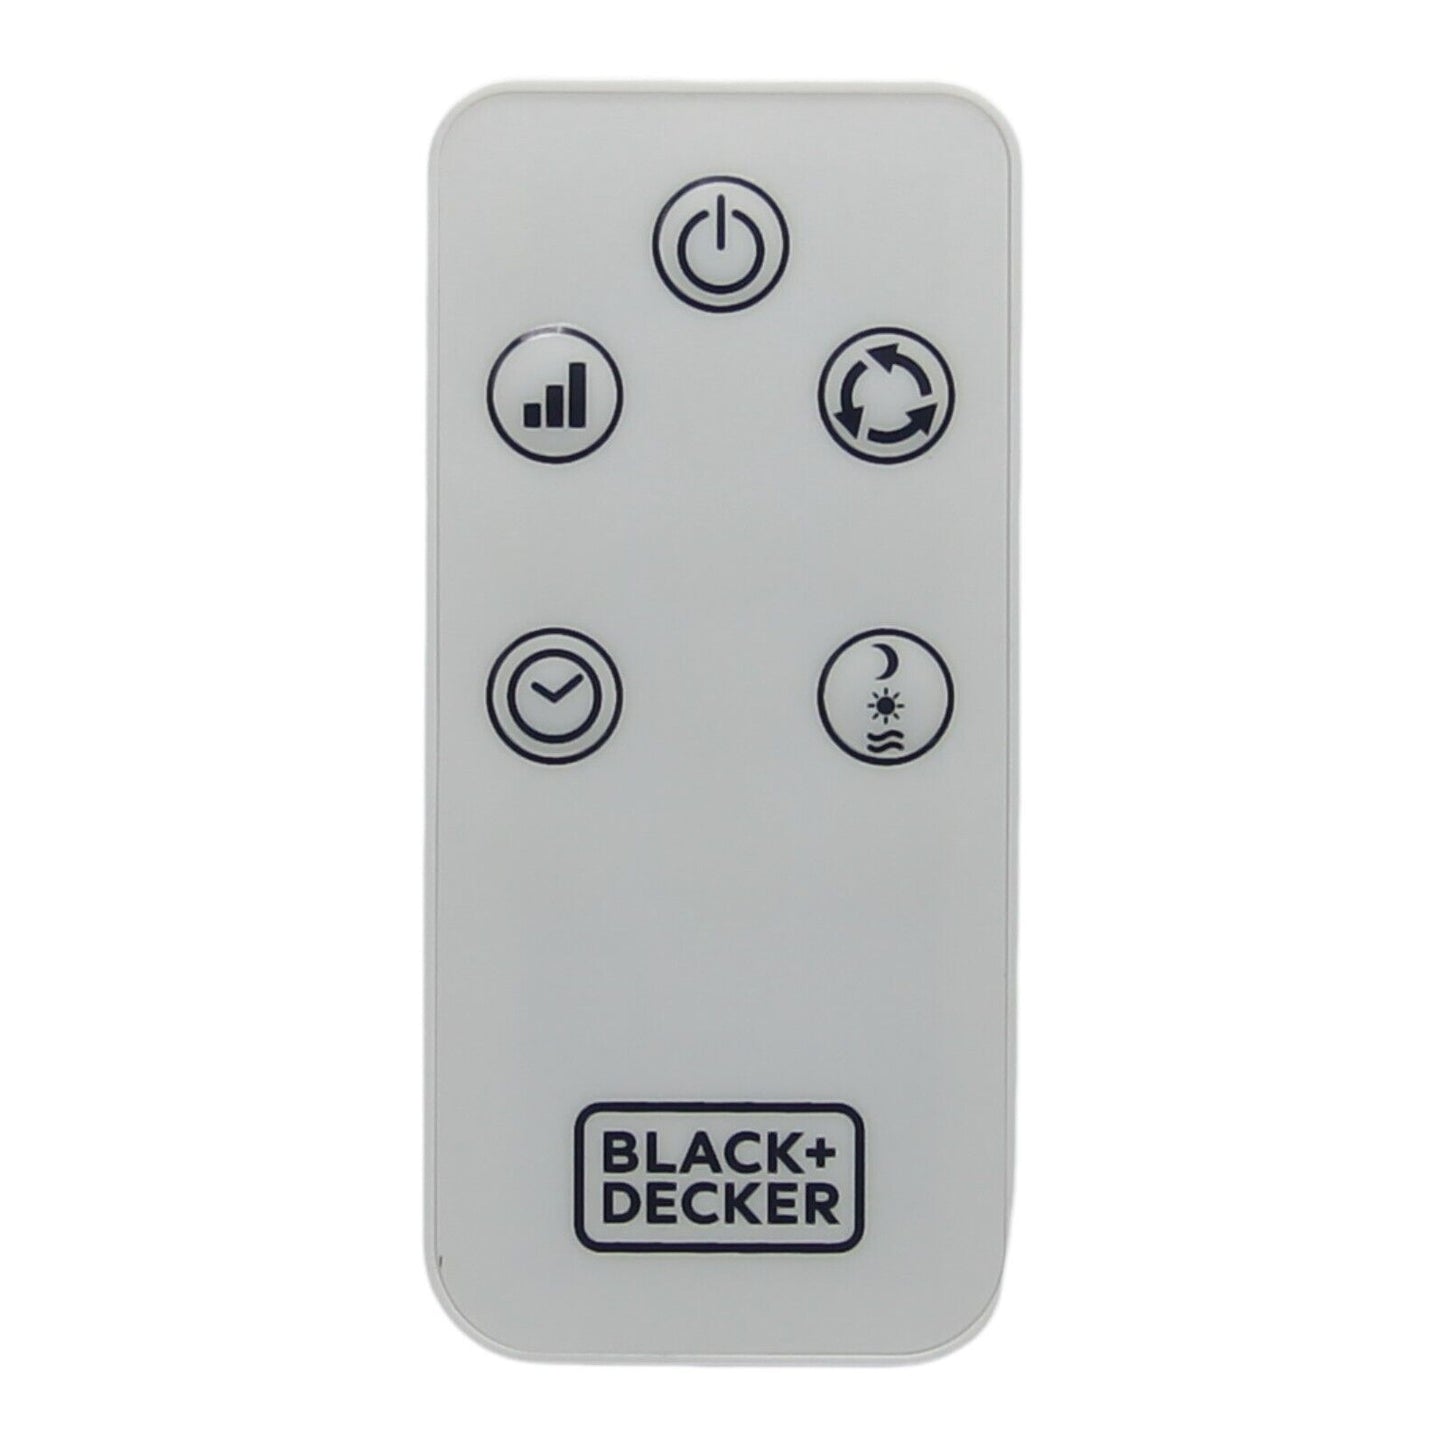 Black & Decker telecomando controllo remoto ventilatore torre BXEFT48E BXEFT49E